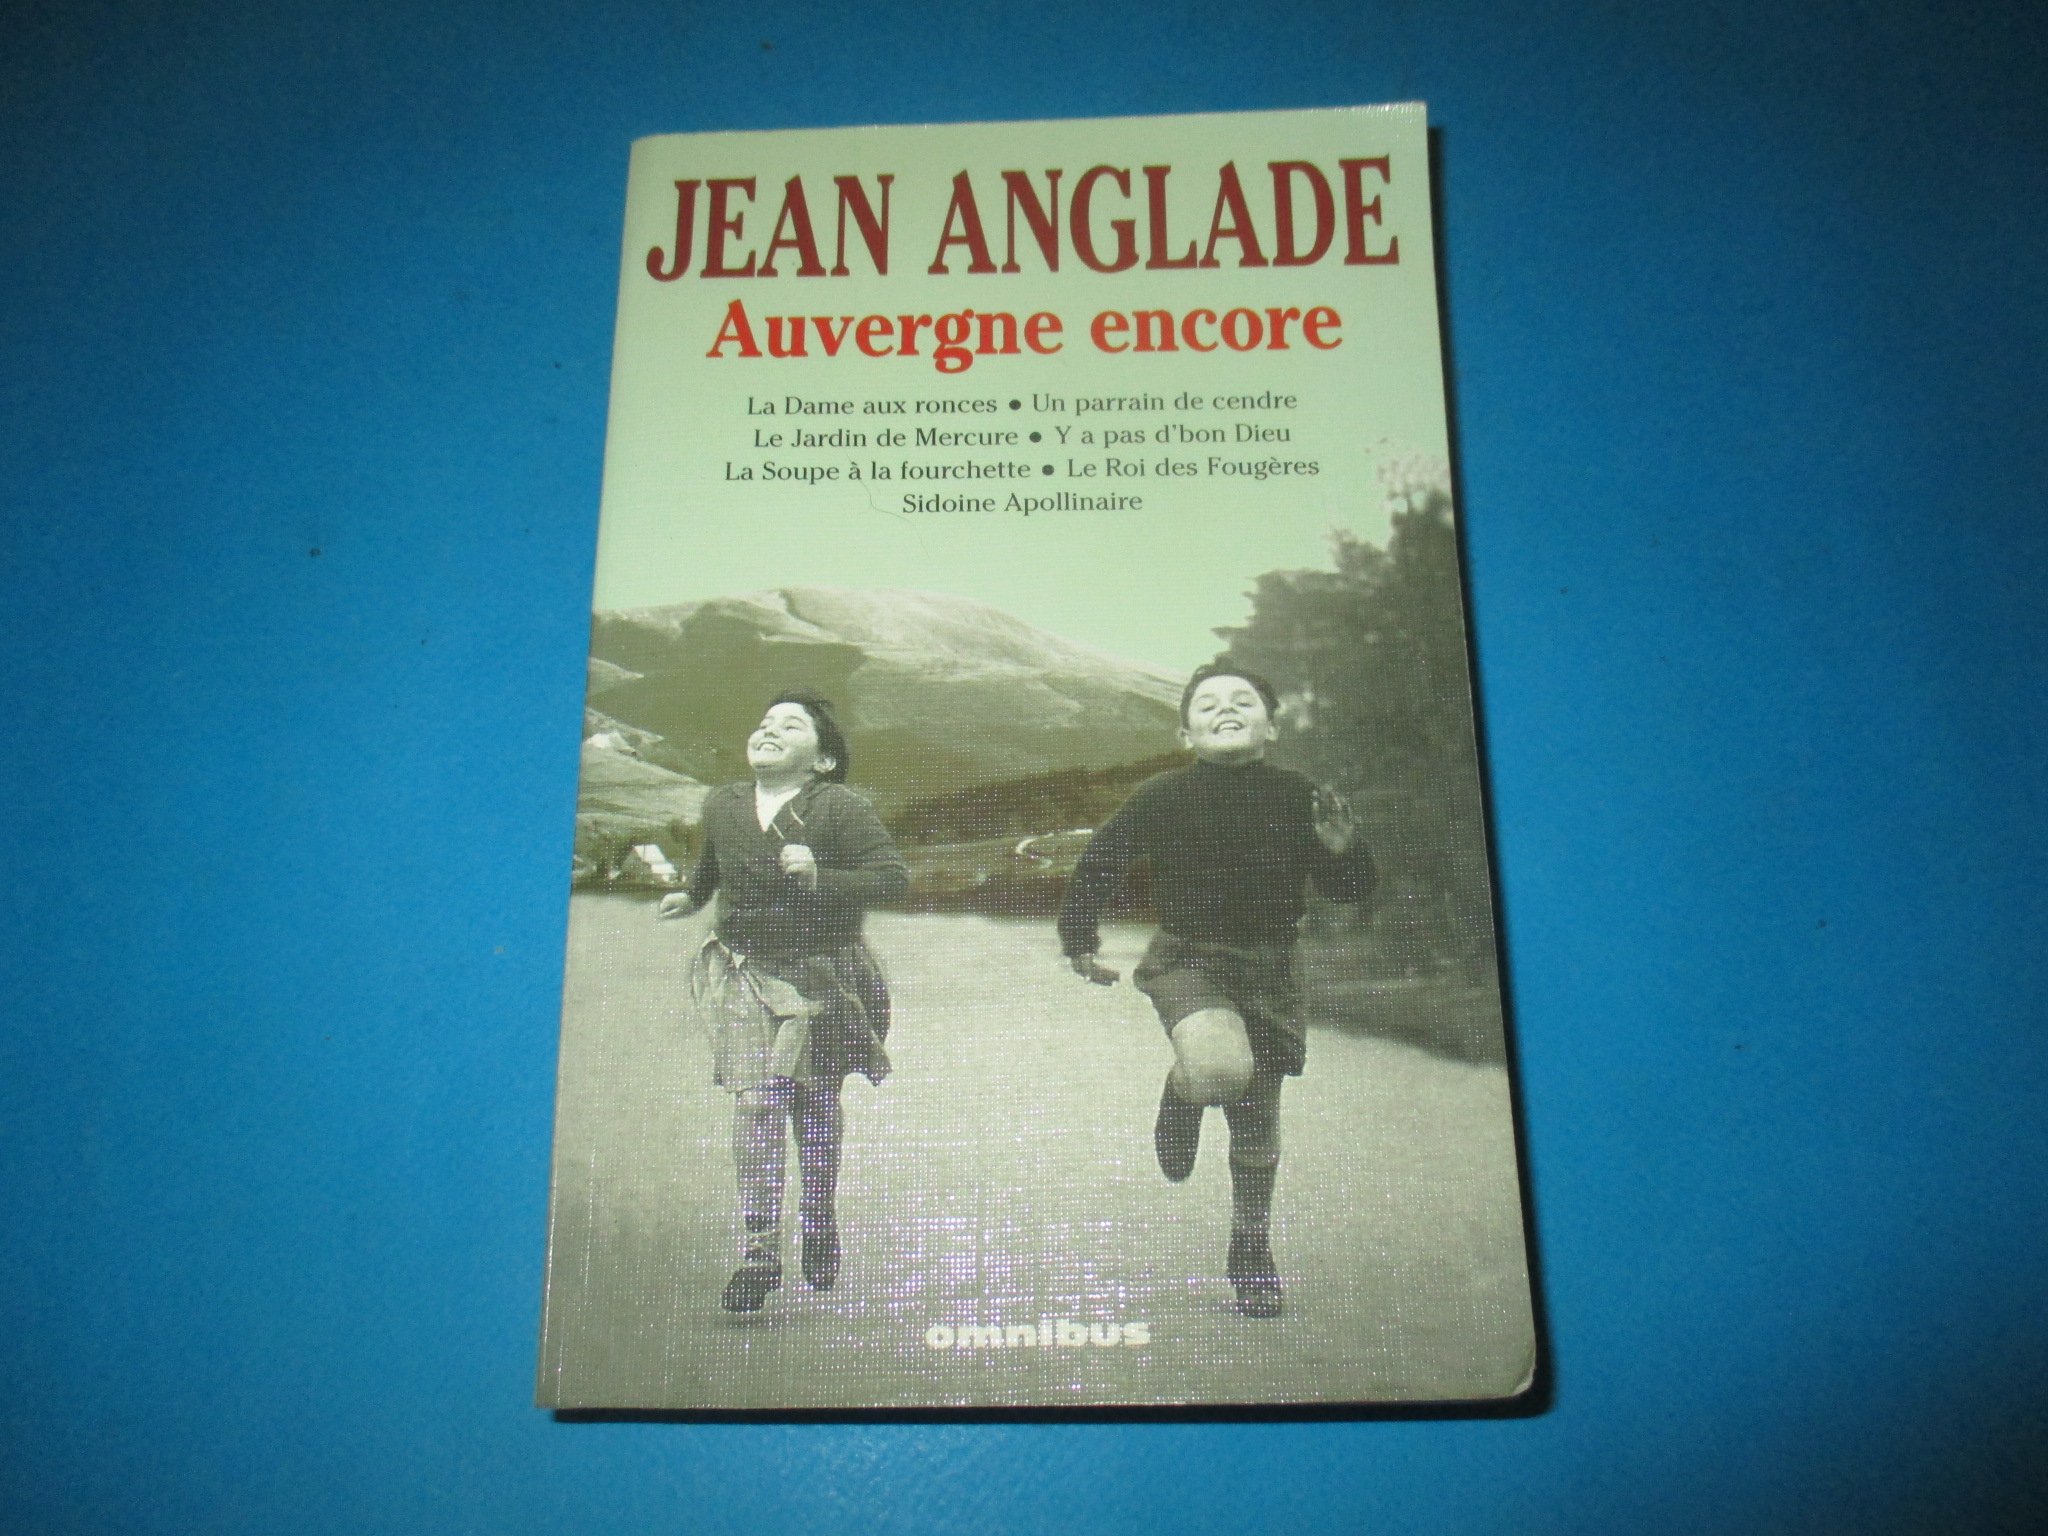 Auvergne encore, Jean Anglade, Intégrale Omnibus